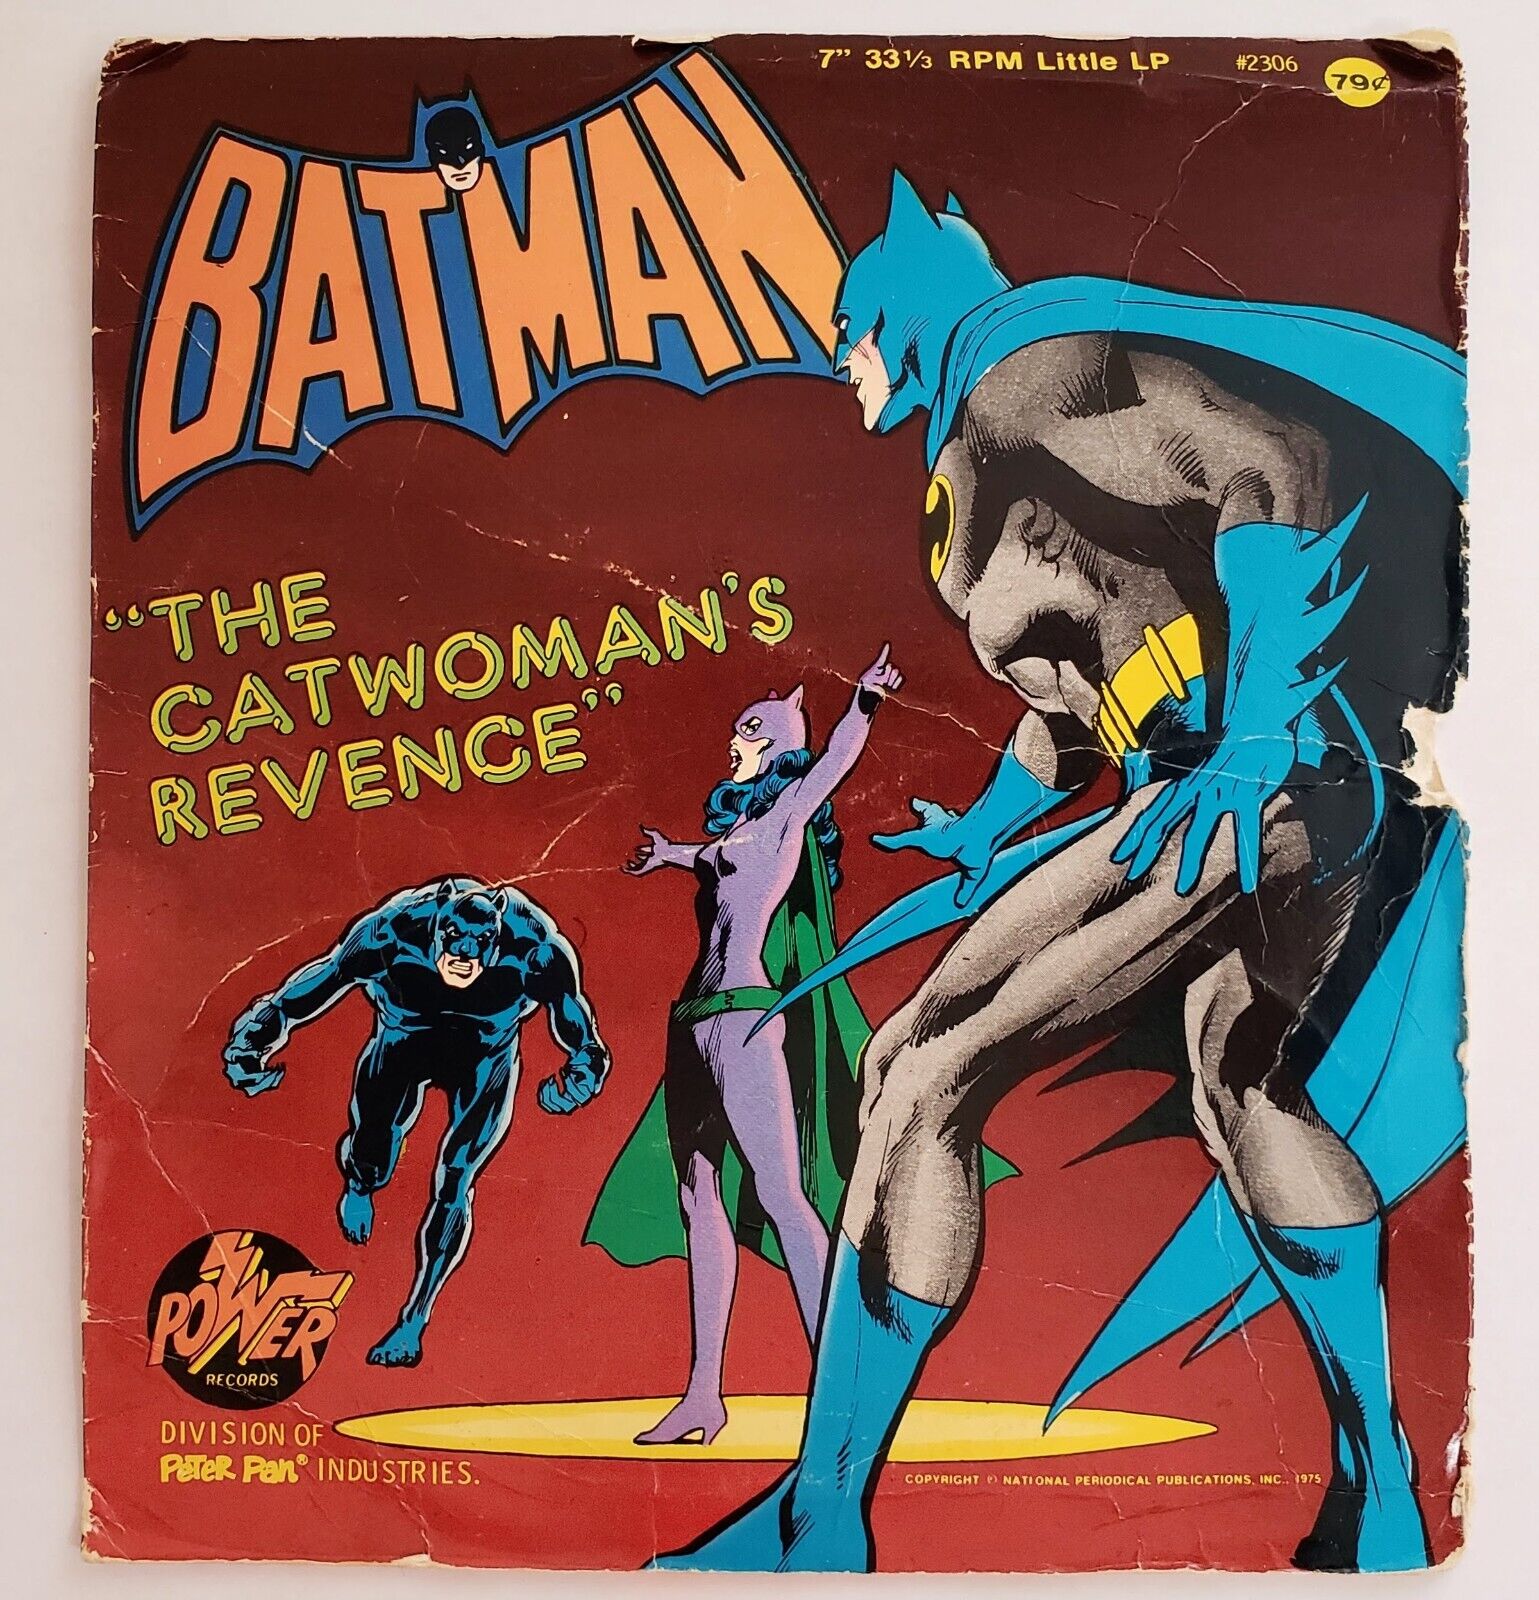 BATMAN - "THE CATWOMAN'S REVENGE" - 33 1/3 RPM LITTLE LP RECORD / Audio Book